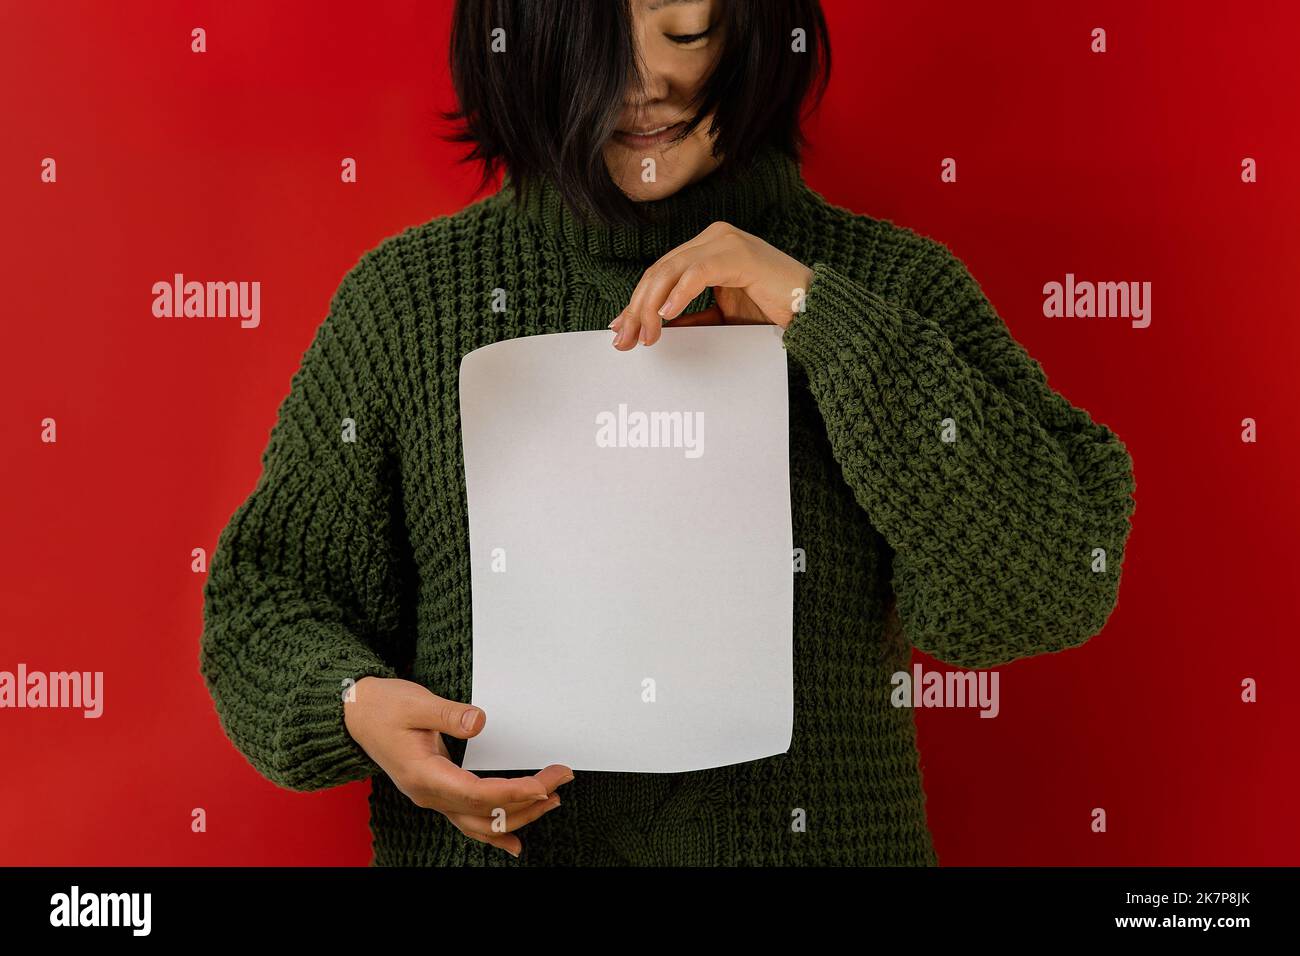 Femme asiatique dans un chandail vert sur un fond rouge tient une feuille de papier vierge dans ses mains, espace de copie. Toile de fond pour la rédaction des objectifs pour l'année, a f Banque D'Images